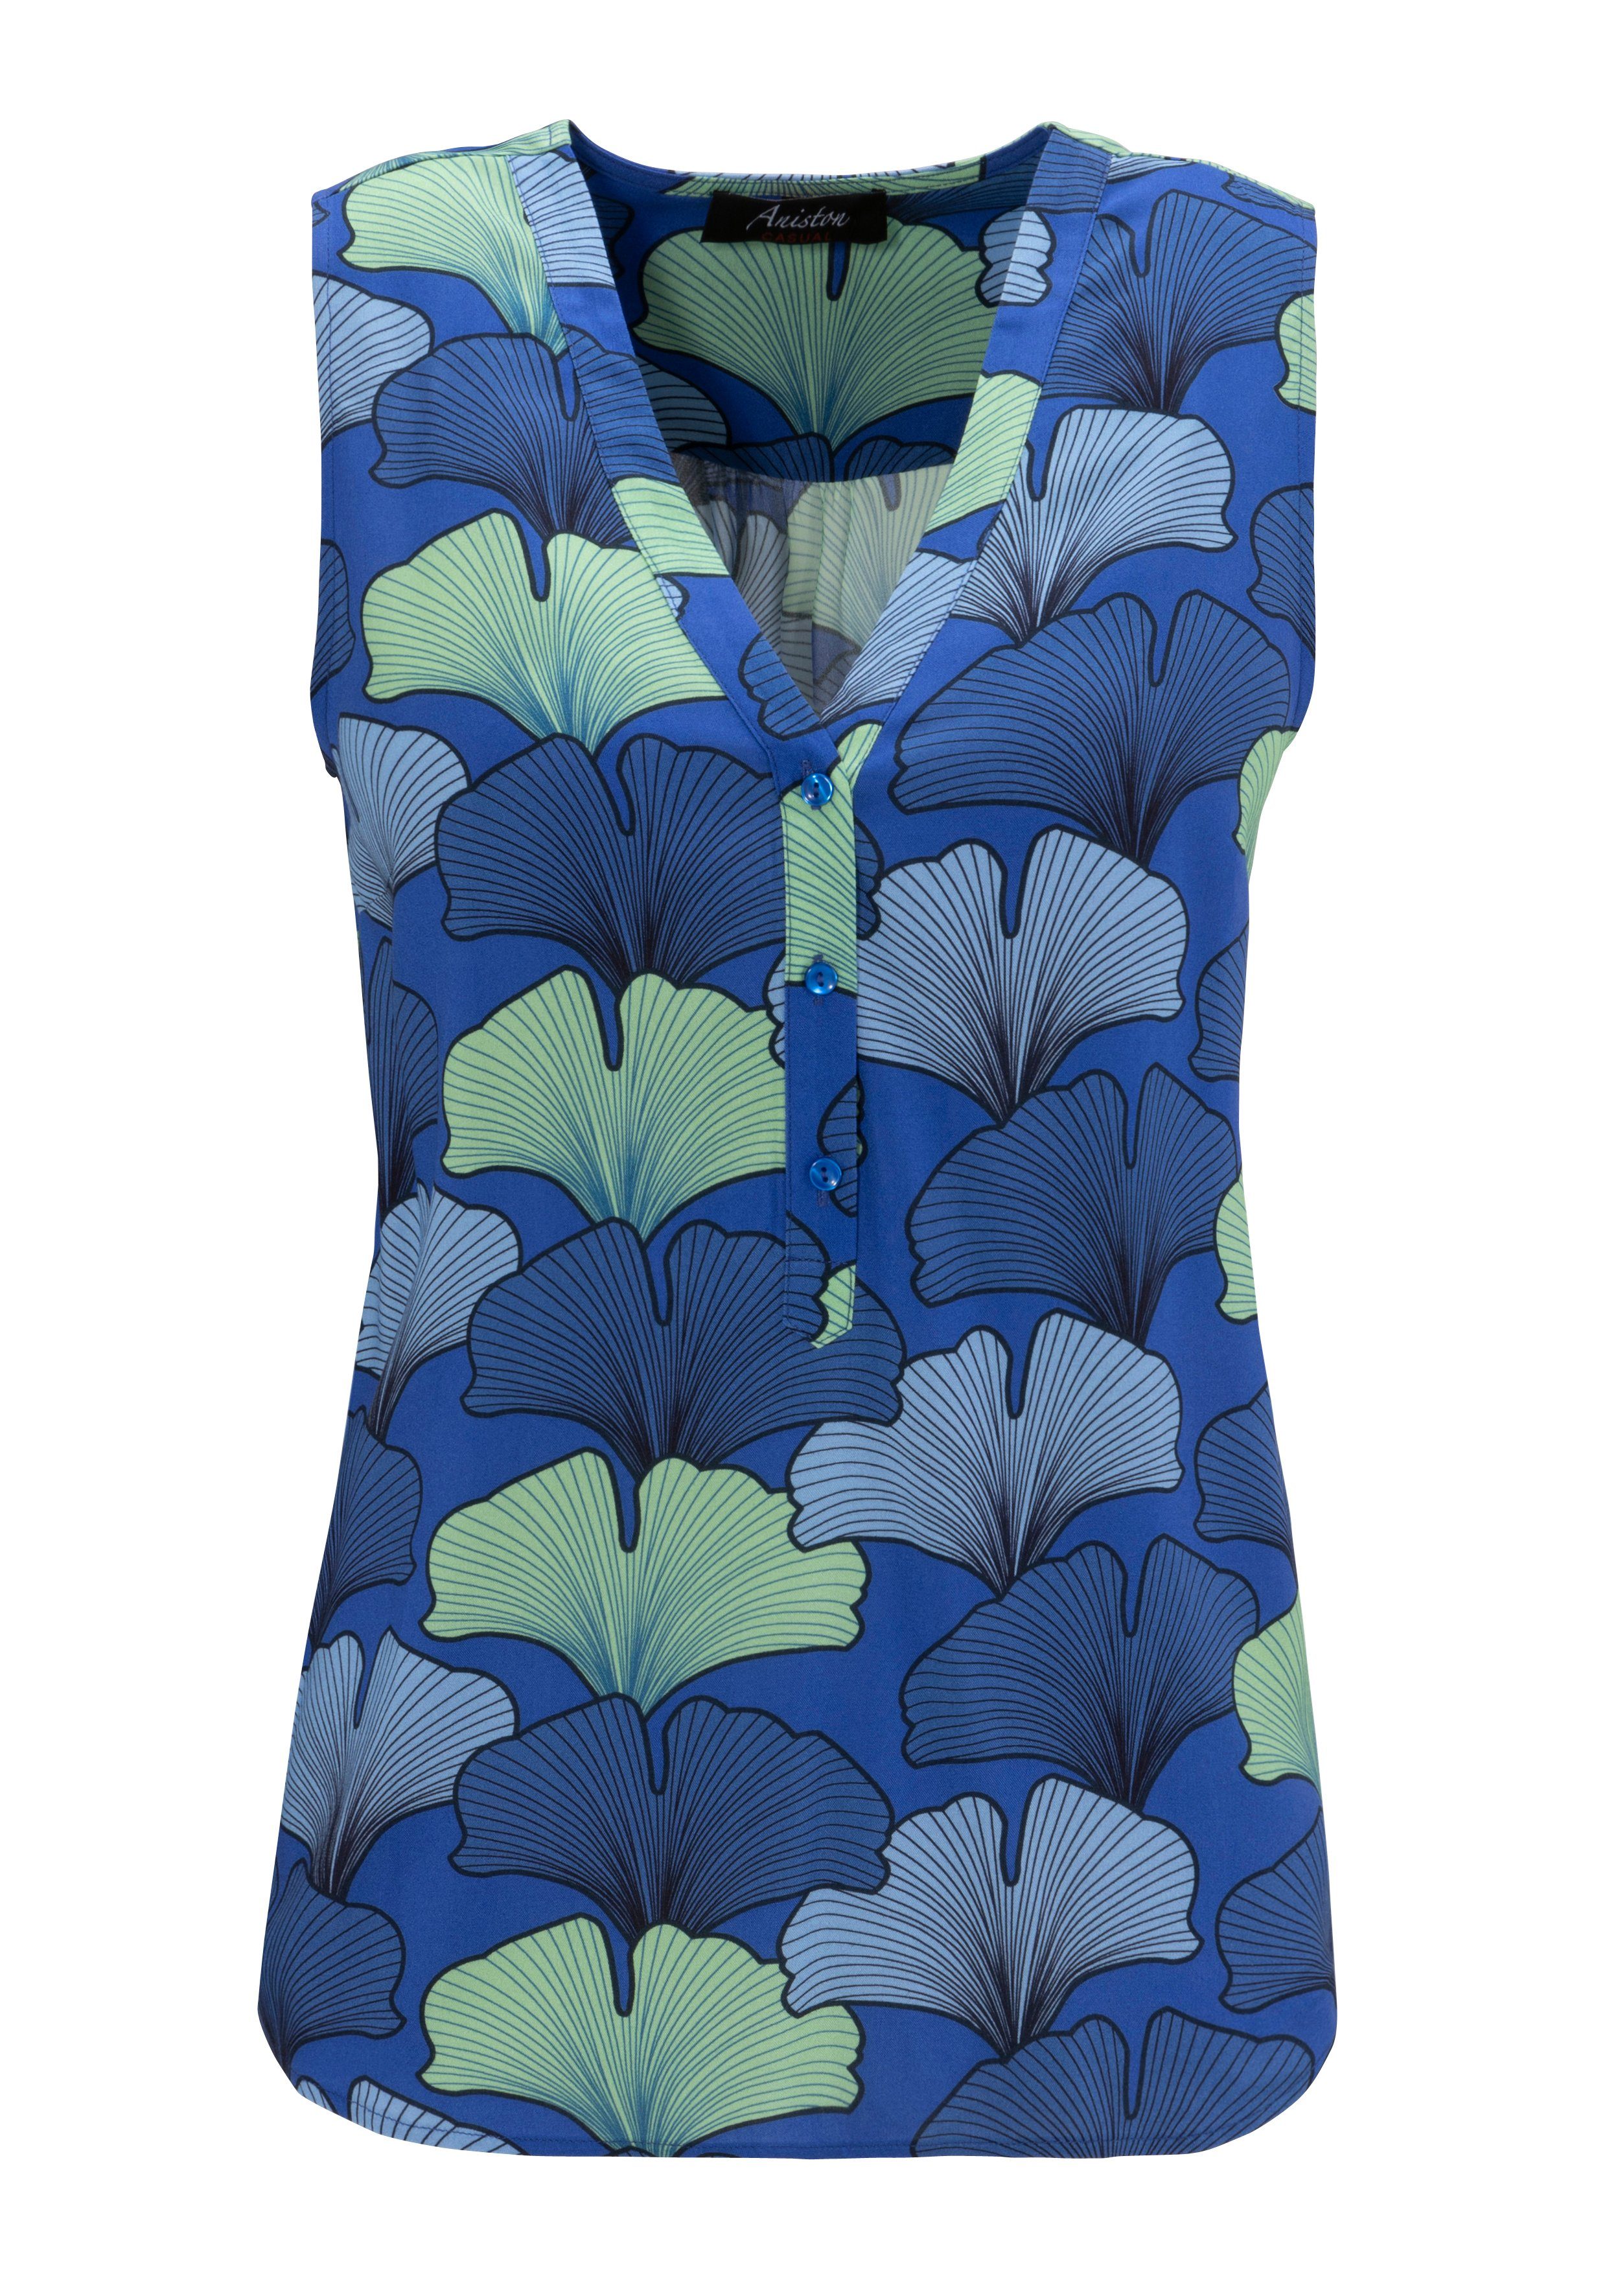 Aniston CASUAL Top bedrukt met harmonieuze kleuren en grote bladeren nieuwe collectie